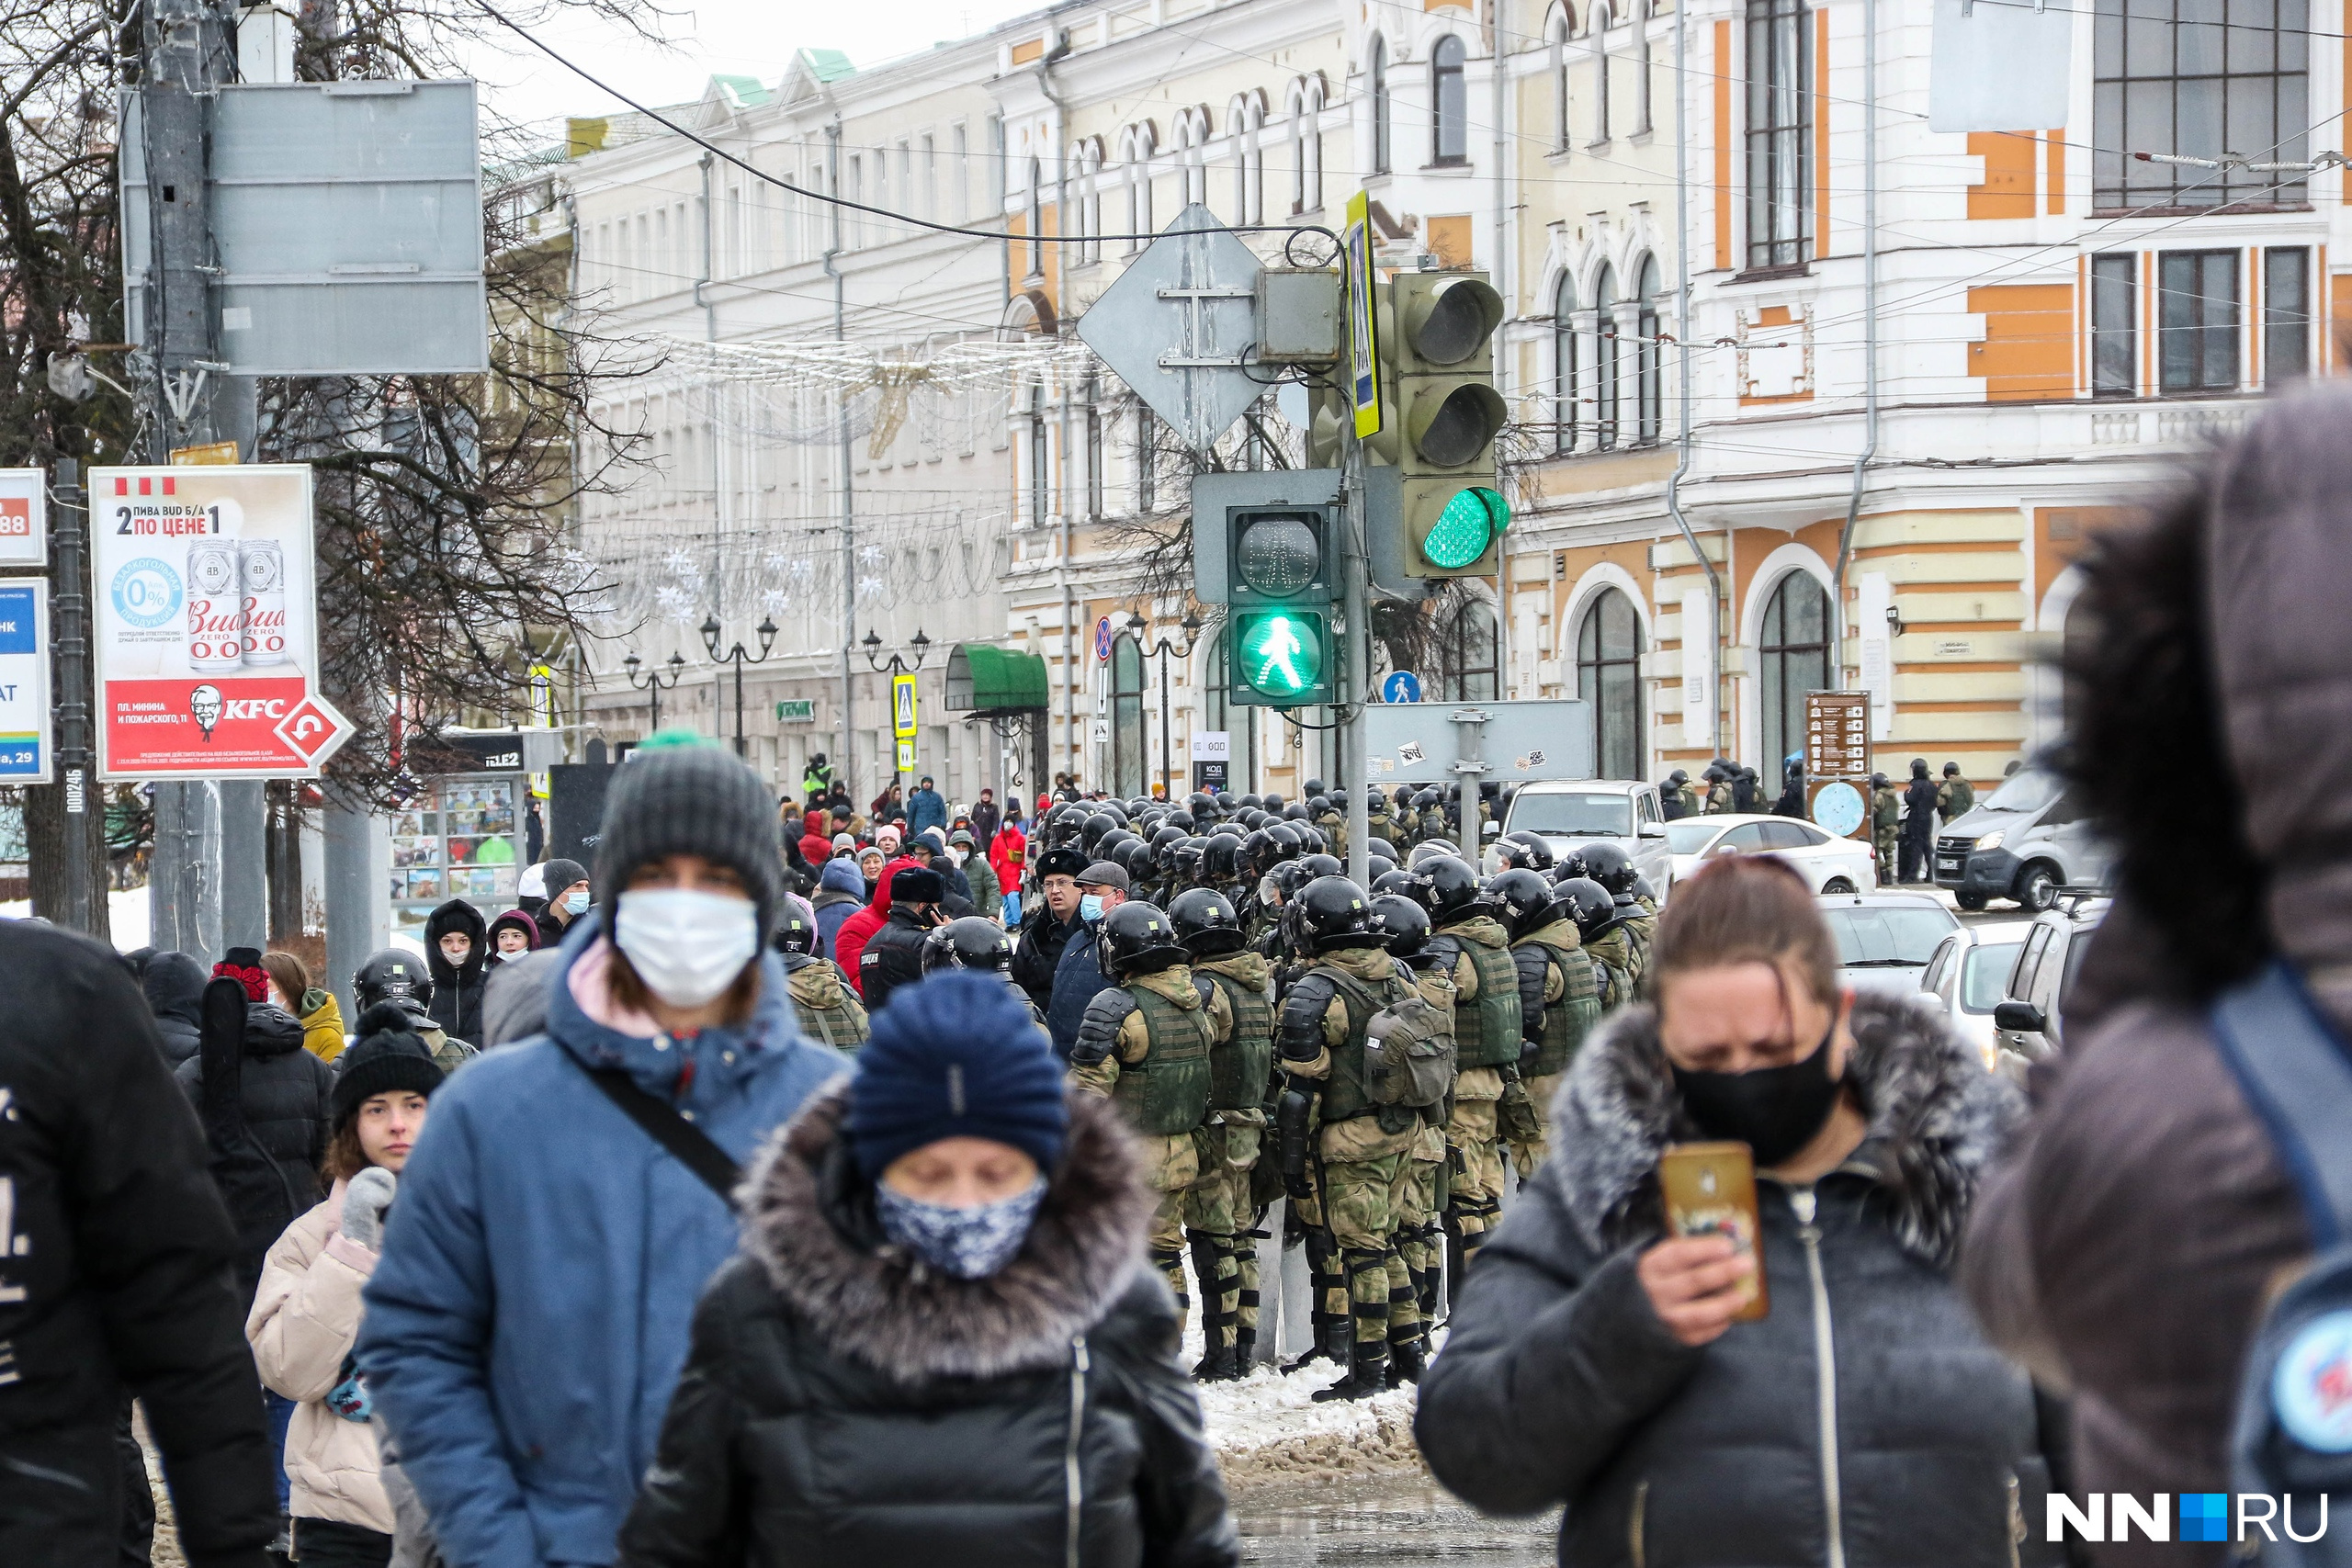 Нижний Новгород <a href="https://www.nn.ru/text/gorod/2021/01/31/69740638/" target="_blank" class="_">вошел в число лидеров по количеству задержаний</a> в стране по итогам митинга <nobr class="_">31 января</nobr>. В отделения полиции было доставлено почти 68% протестующих